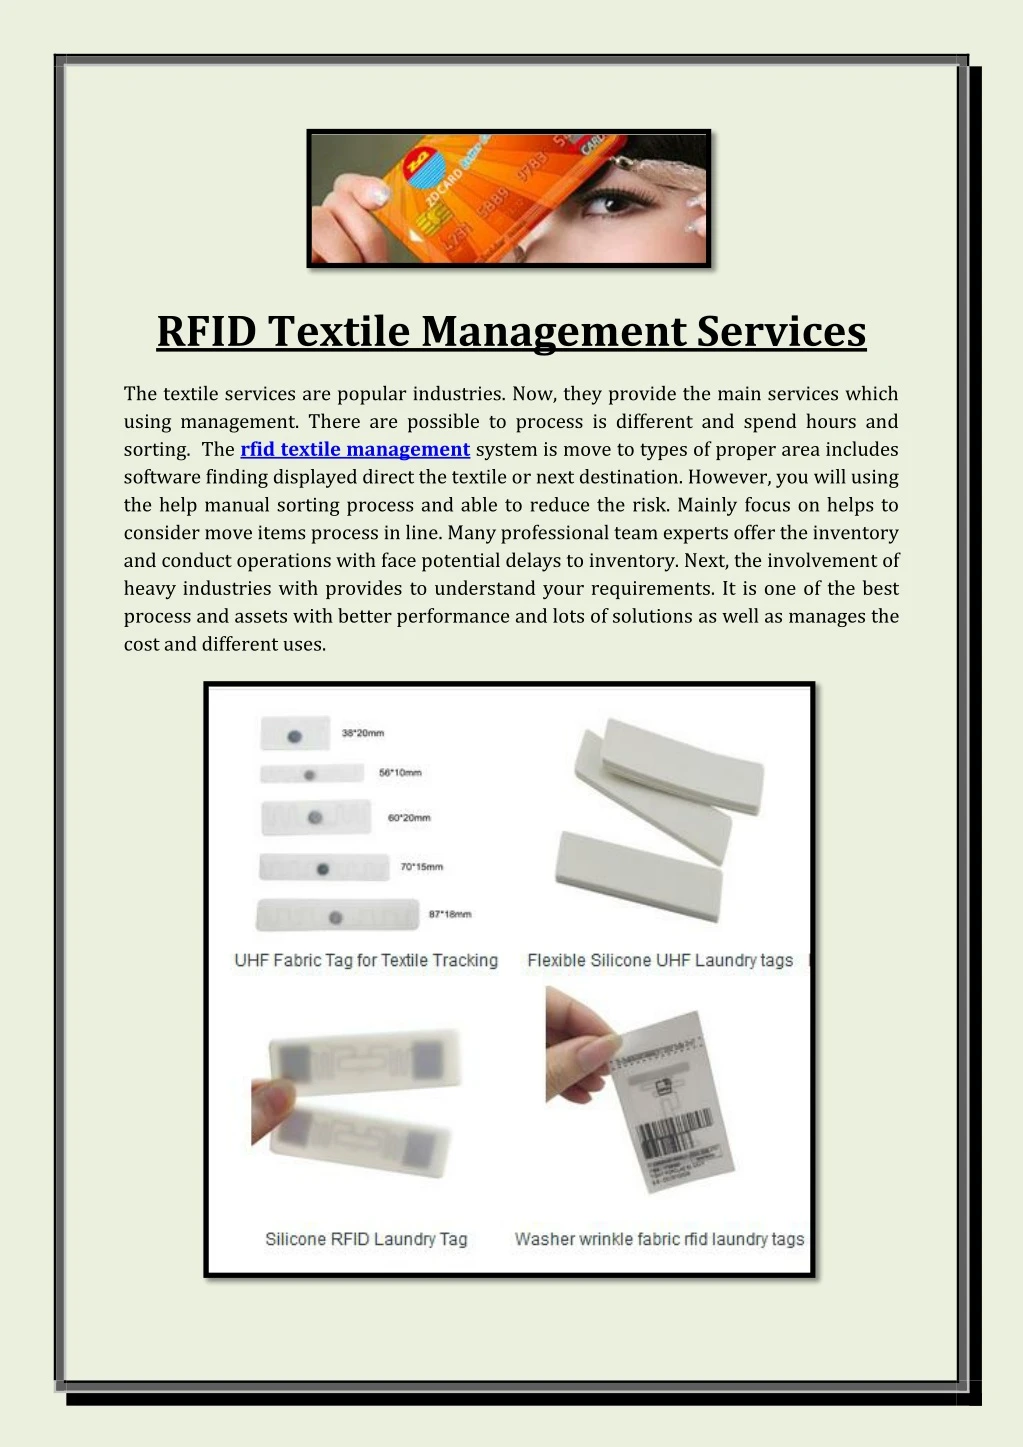 rfid textile management services